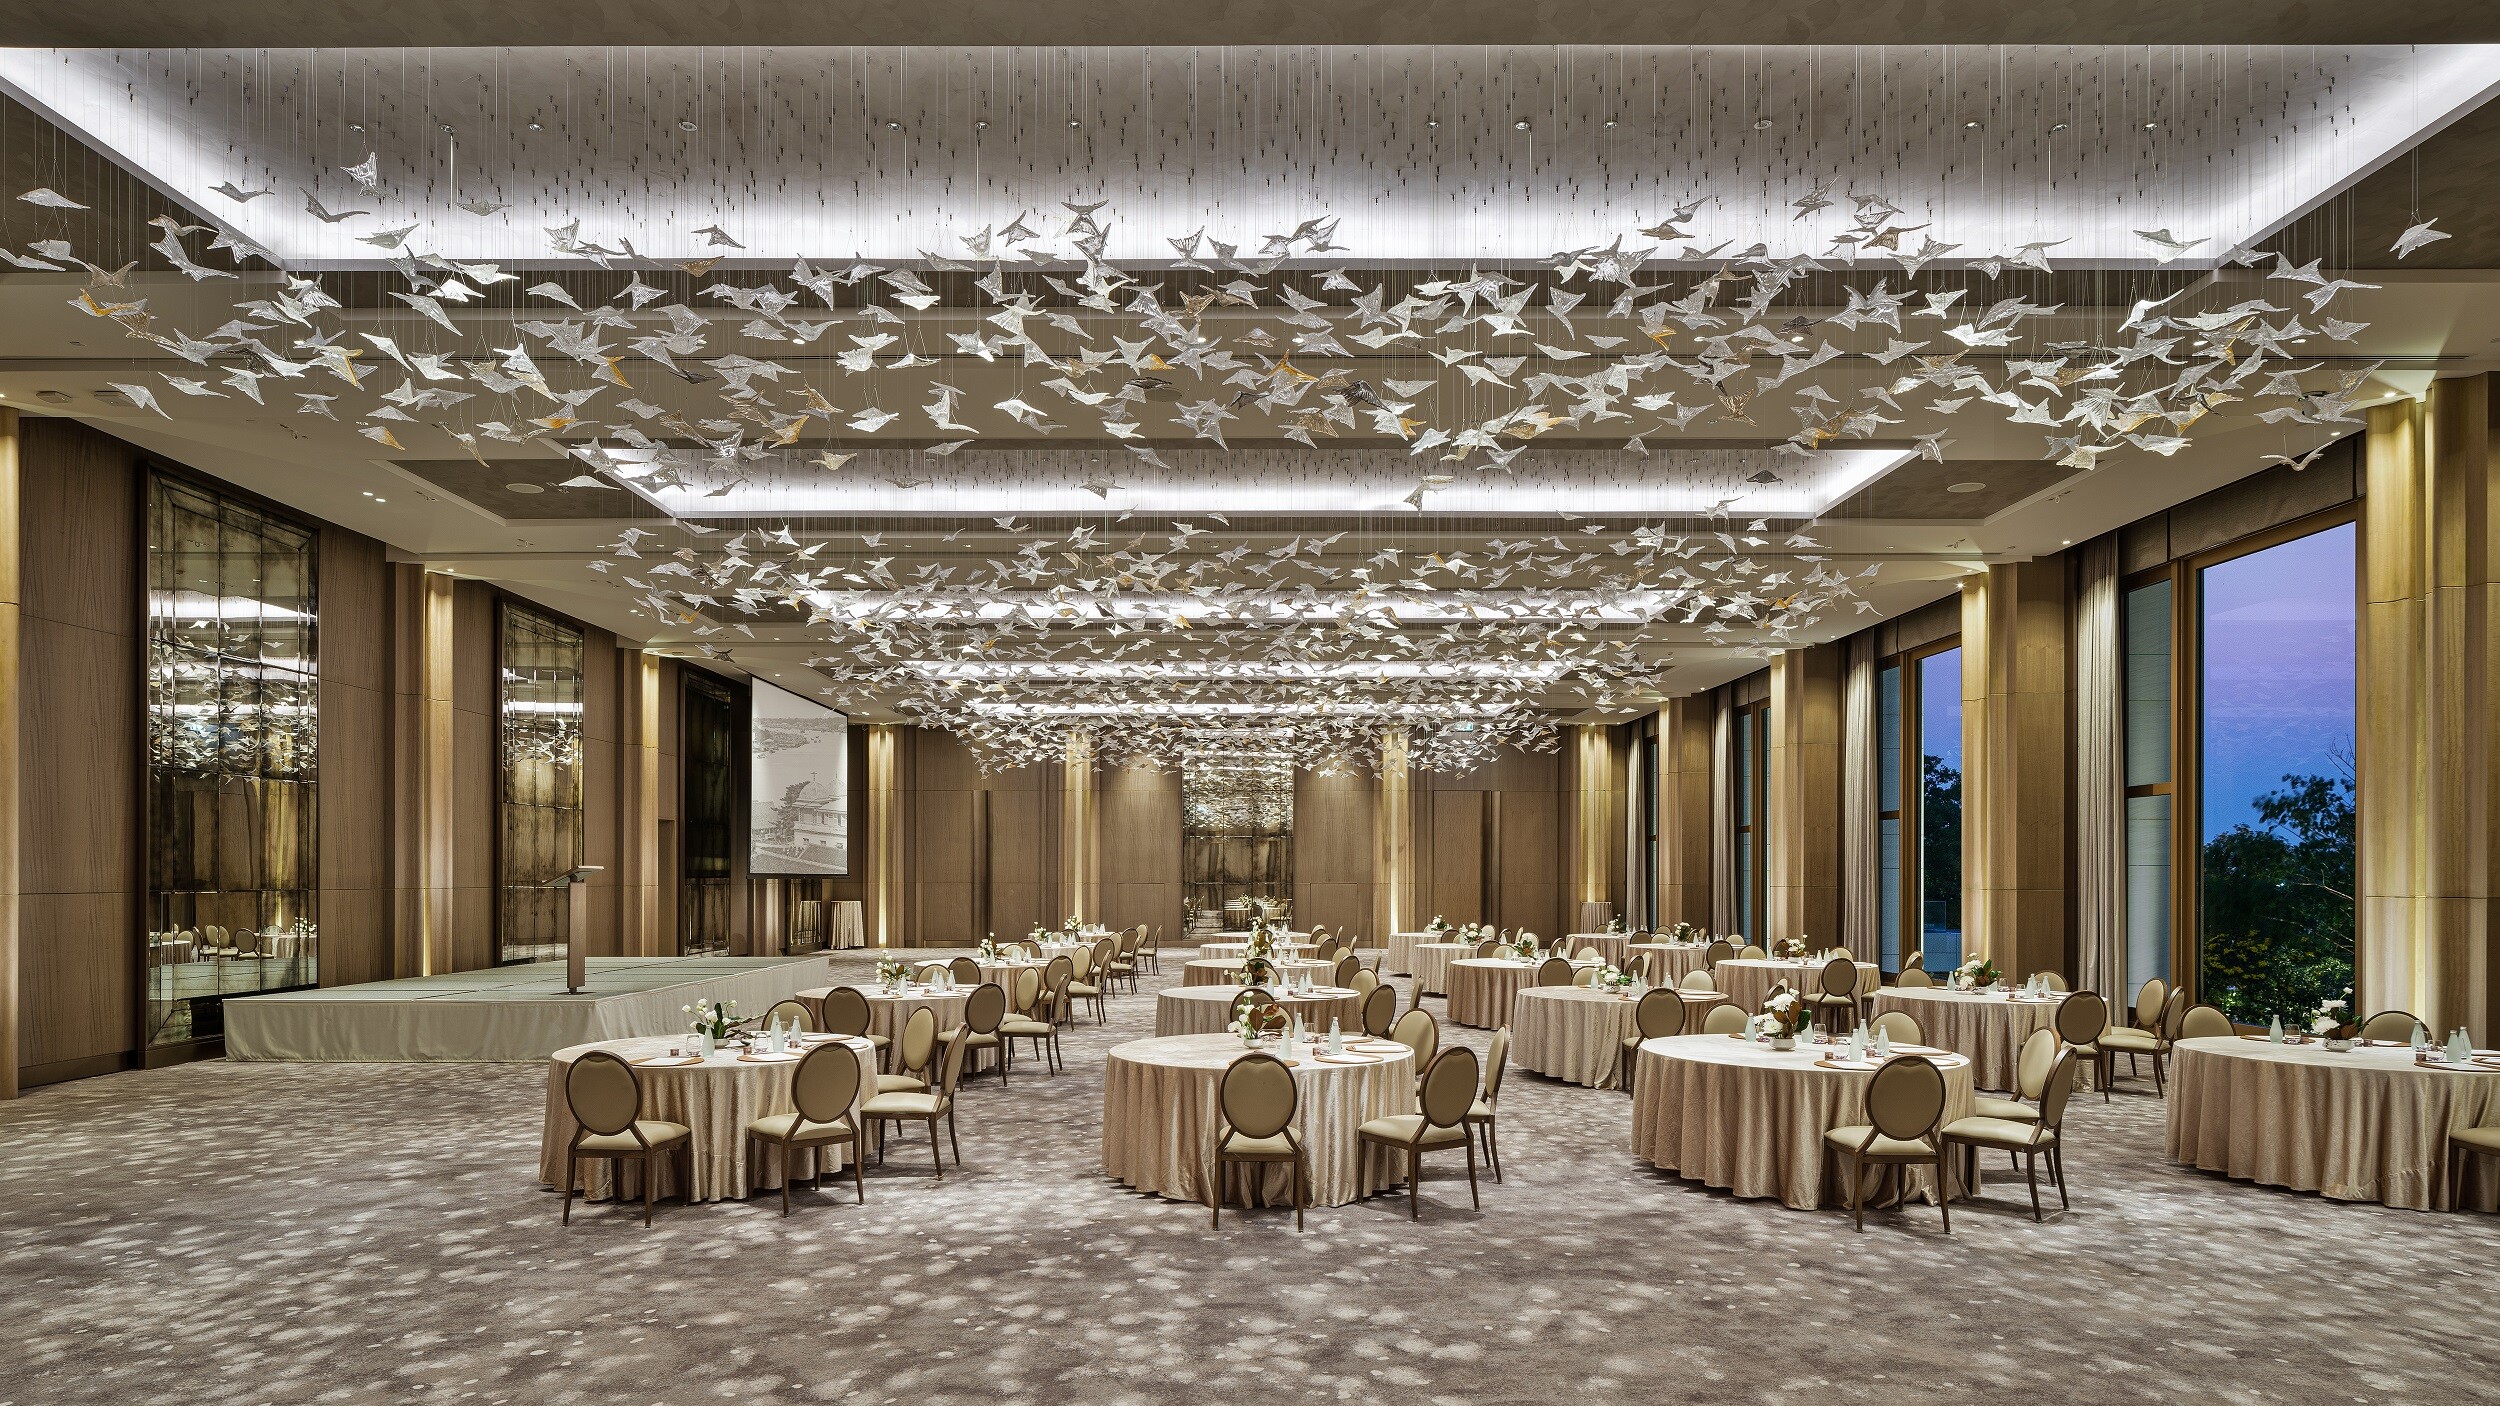 โรงแรมคาเพลลา กรุงเทพ ฉลองชัย คว้ารางวัล Best Event Spaces จาก AHEAD Asia 2021